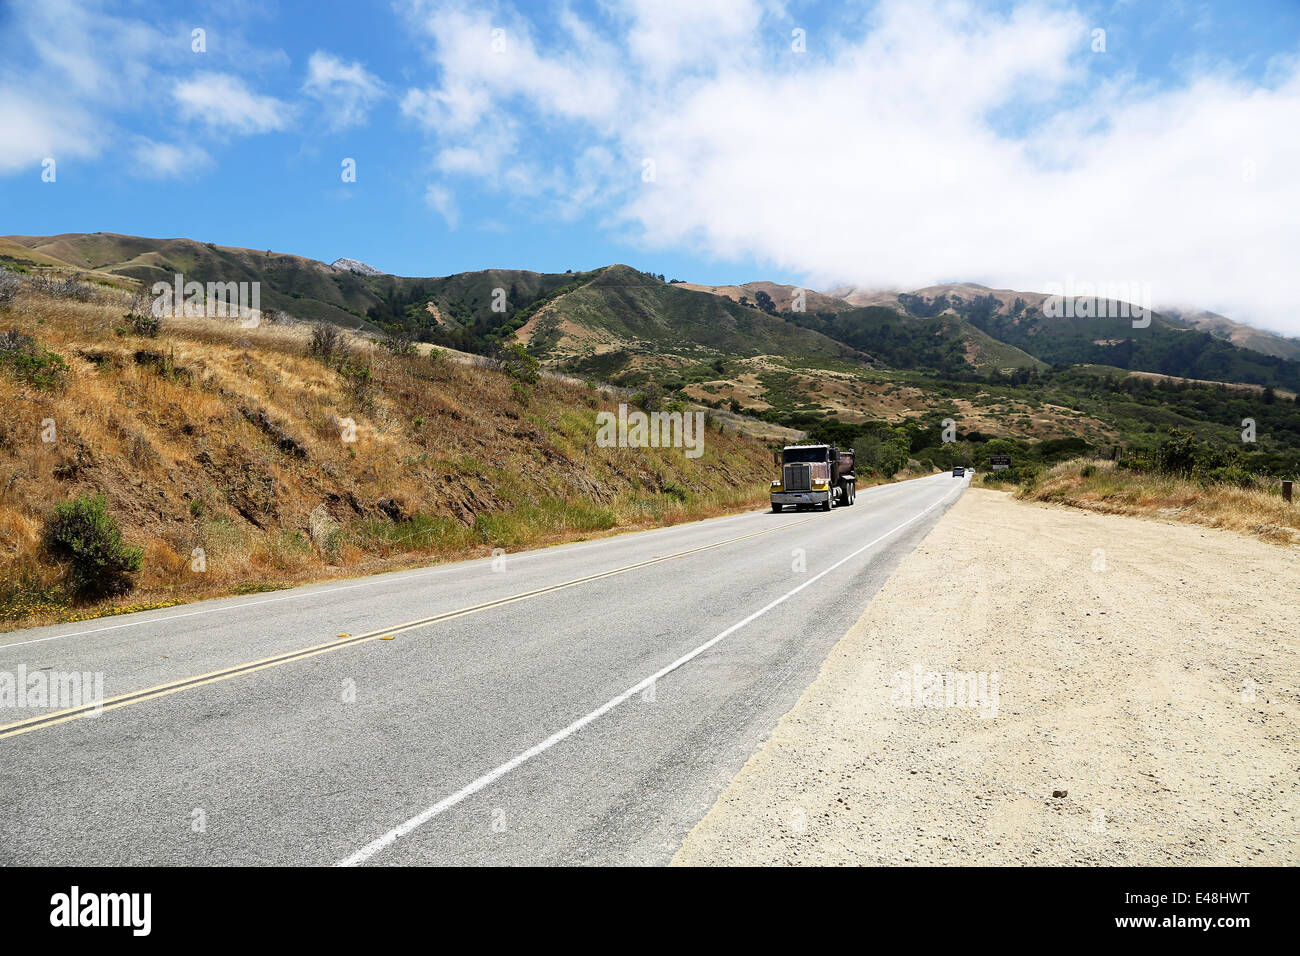 La guida di automezzi pesanti sulla Route 1, Pacific Highway 101 California sulla strada da Big Sur, con stupende vedute del paesaggio e dell'oceano Foto Stock